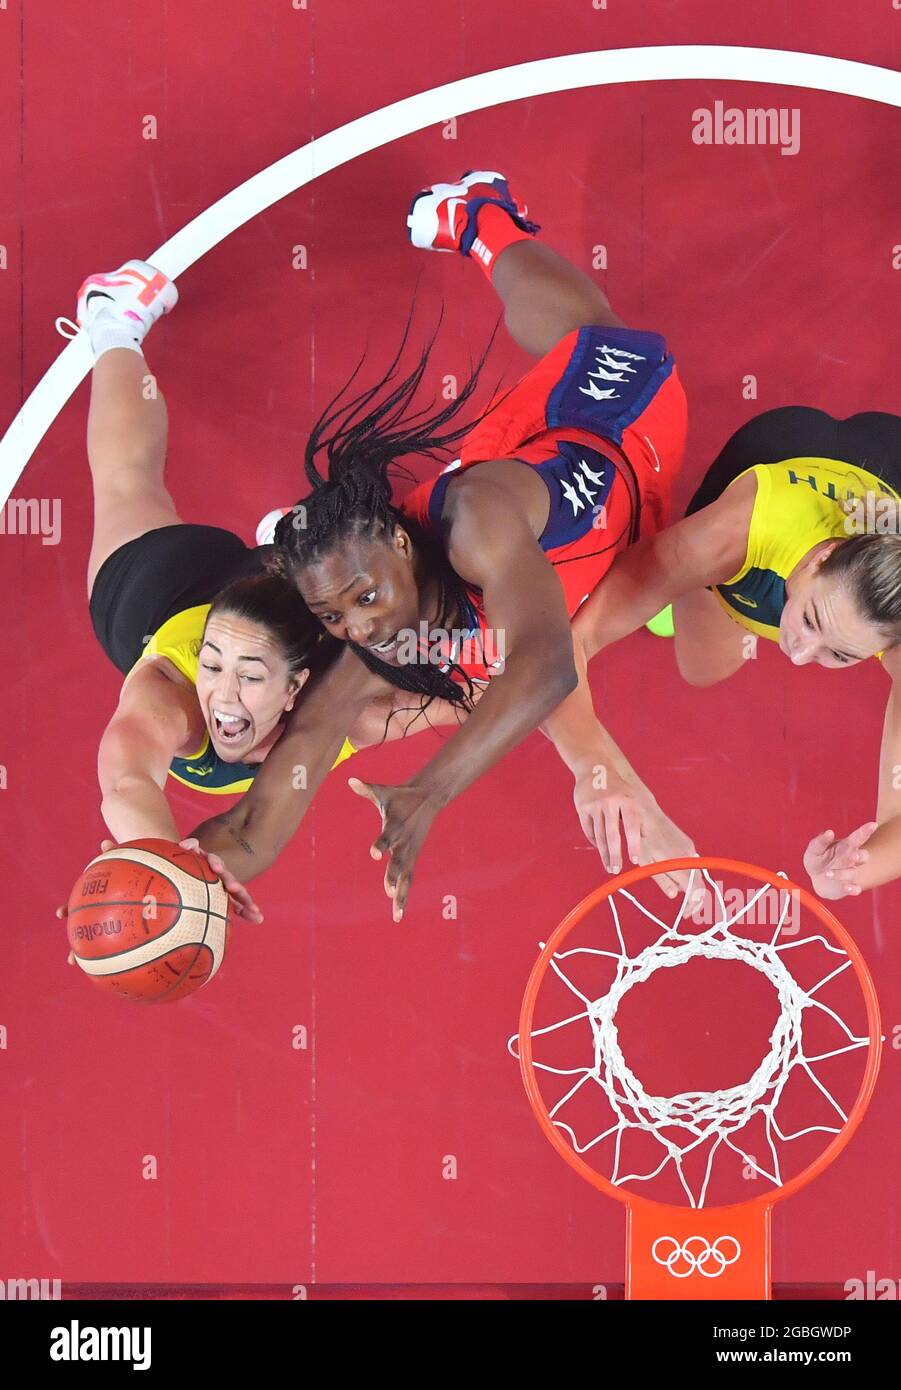 Saitama, Japon. 4 août 2021. Sylvia Fowles (C) des États-Unis participe à la compétition de basket-ball féminin entre les États-Unis et l'Australie aux Jeux Olympiques de Tokyo 2020 à Saitama, au Japon, le 4 août 2021. Credit: Meng Yongmin/Xinhua/Alamy Live News Banque D'Images